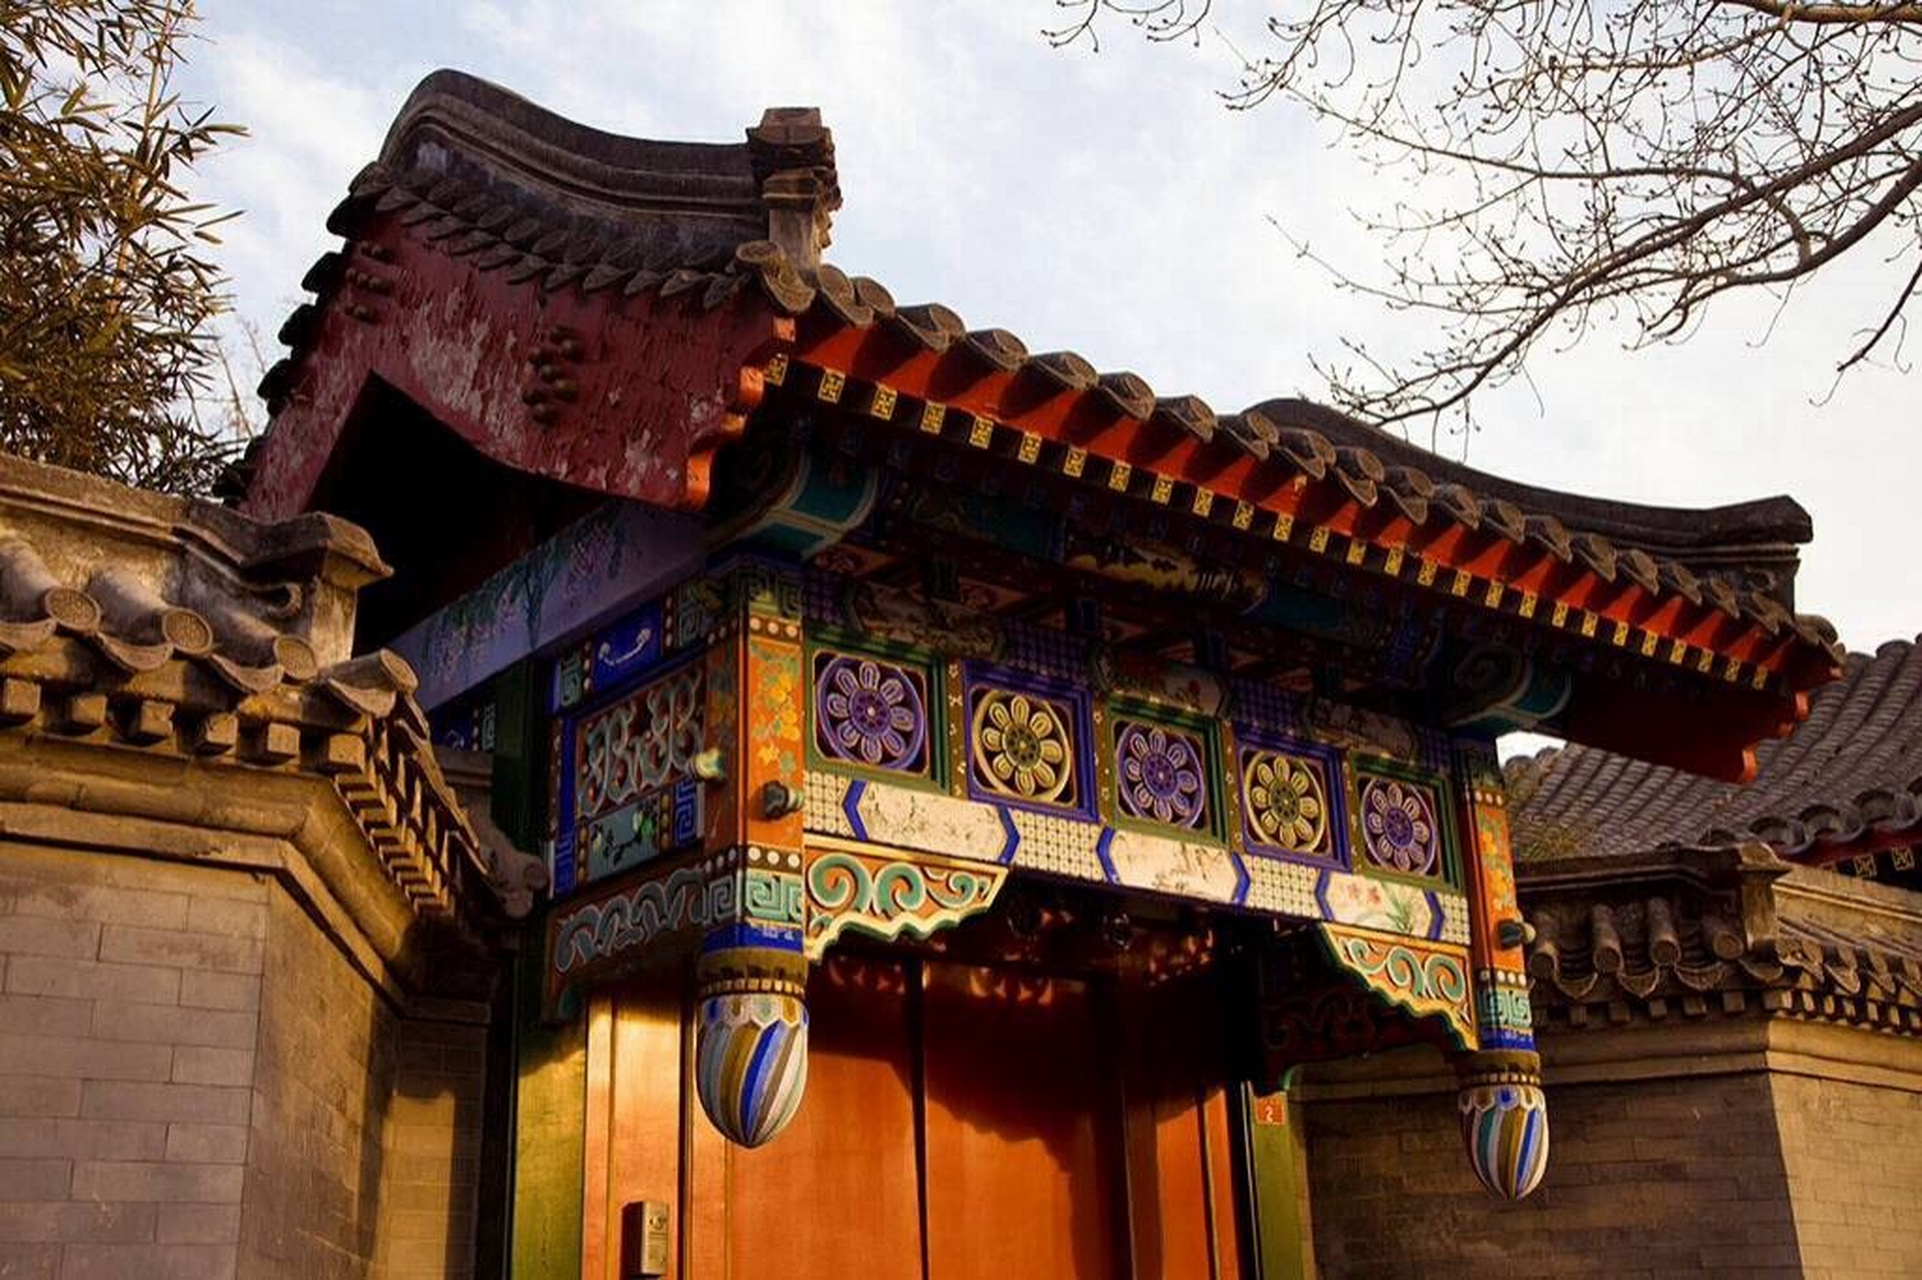 中国民居建筑:北京四合院 95北京四合院是典型的中国传统合院式民居